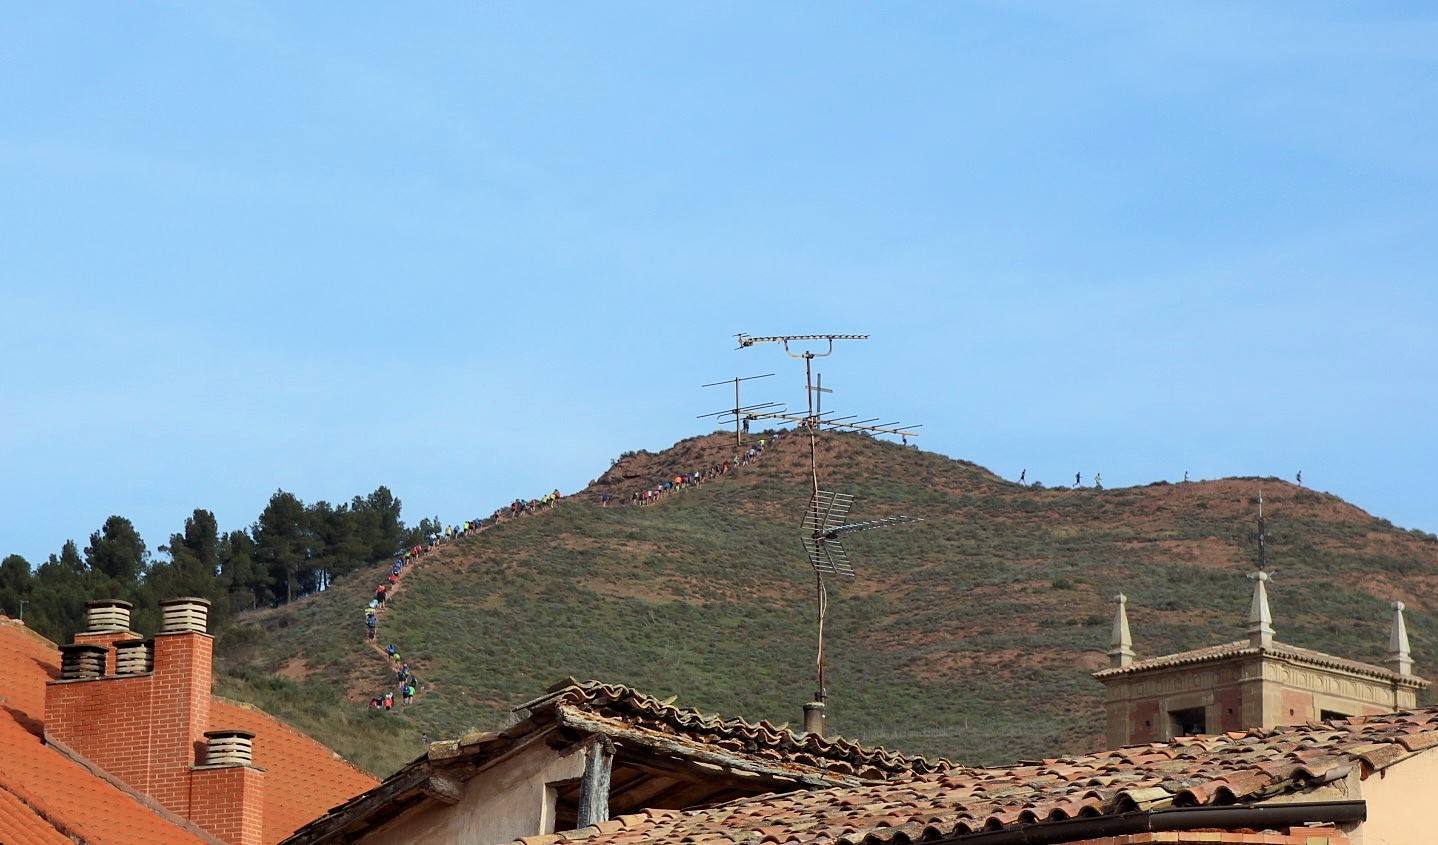 Fotos: Campeonato de Carreras por Montaña de La Rioja. La Nájera Xtrem reúne a más de 200 corredores